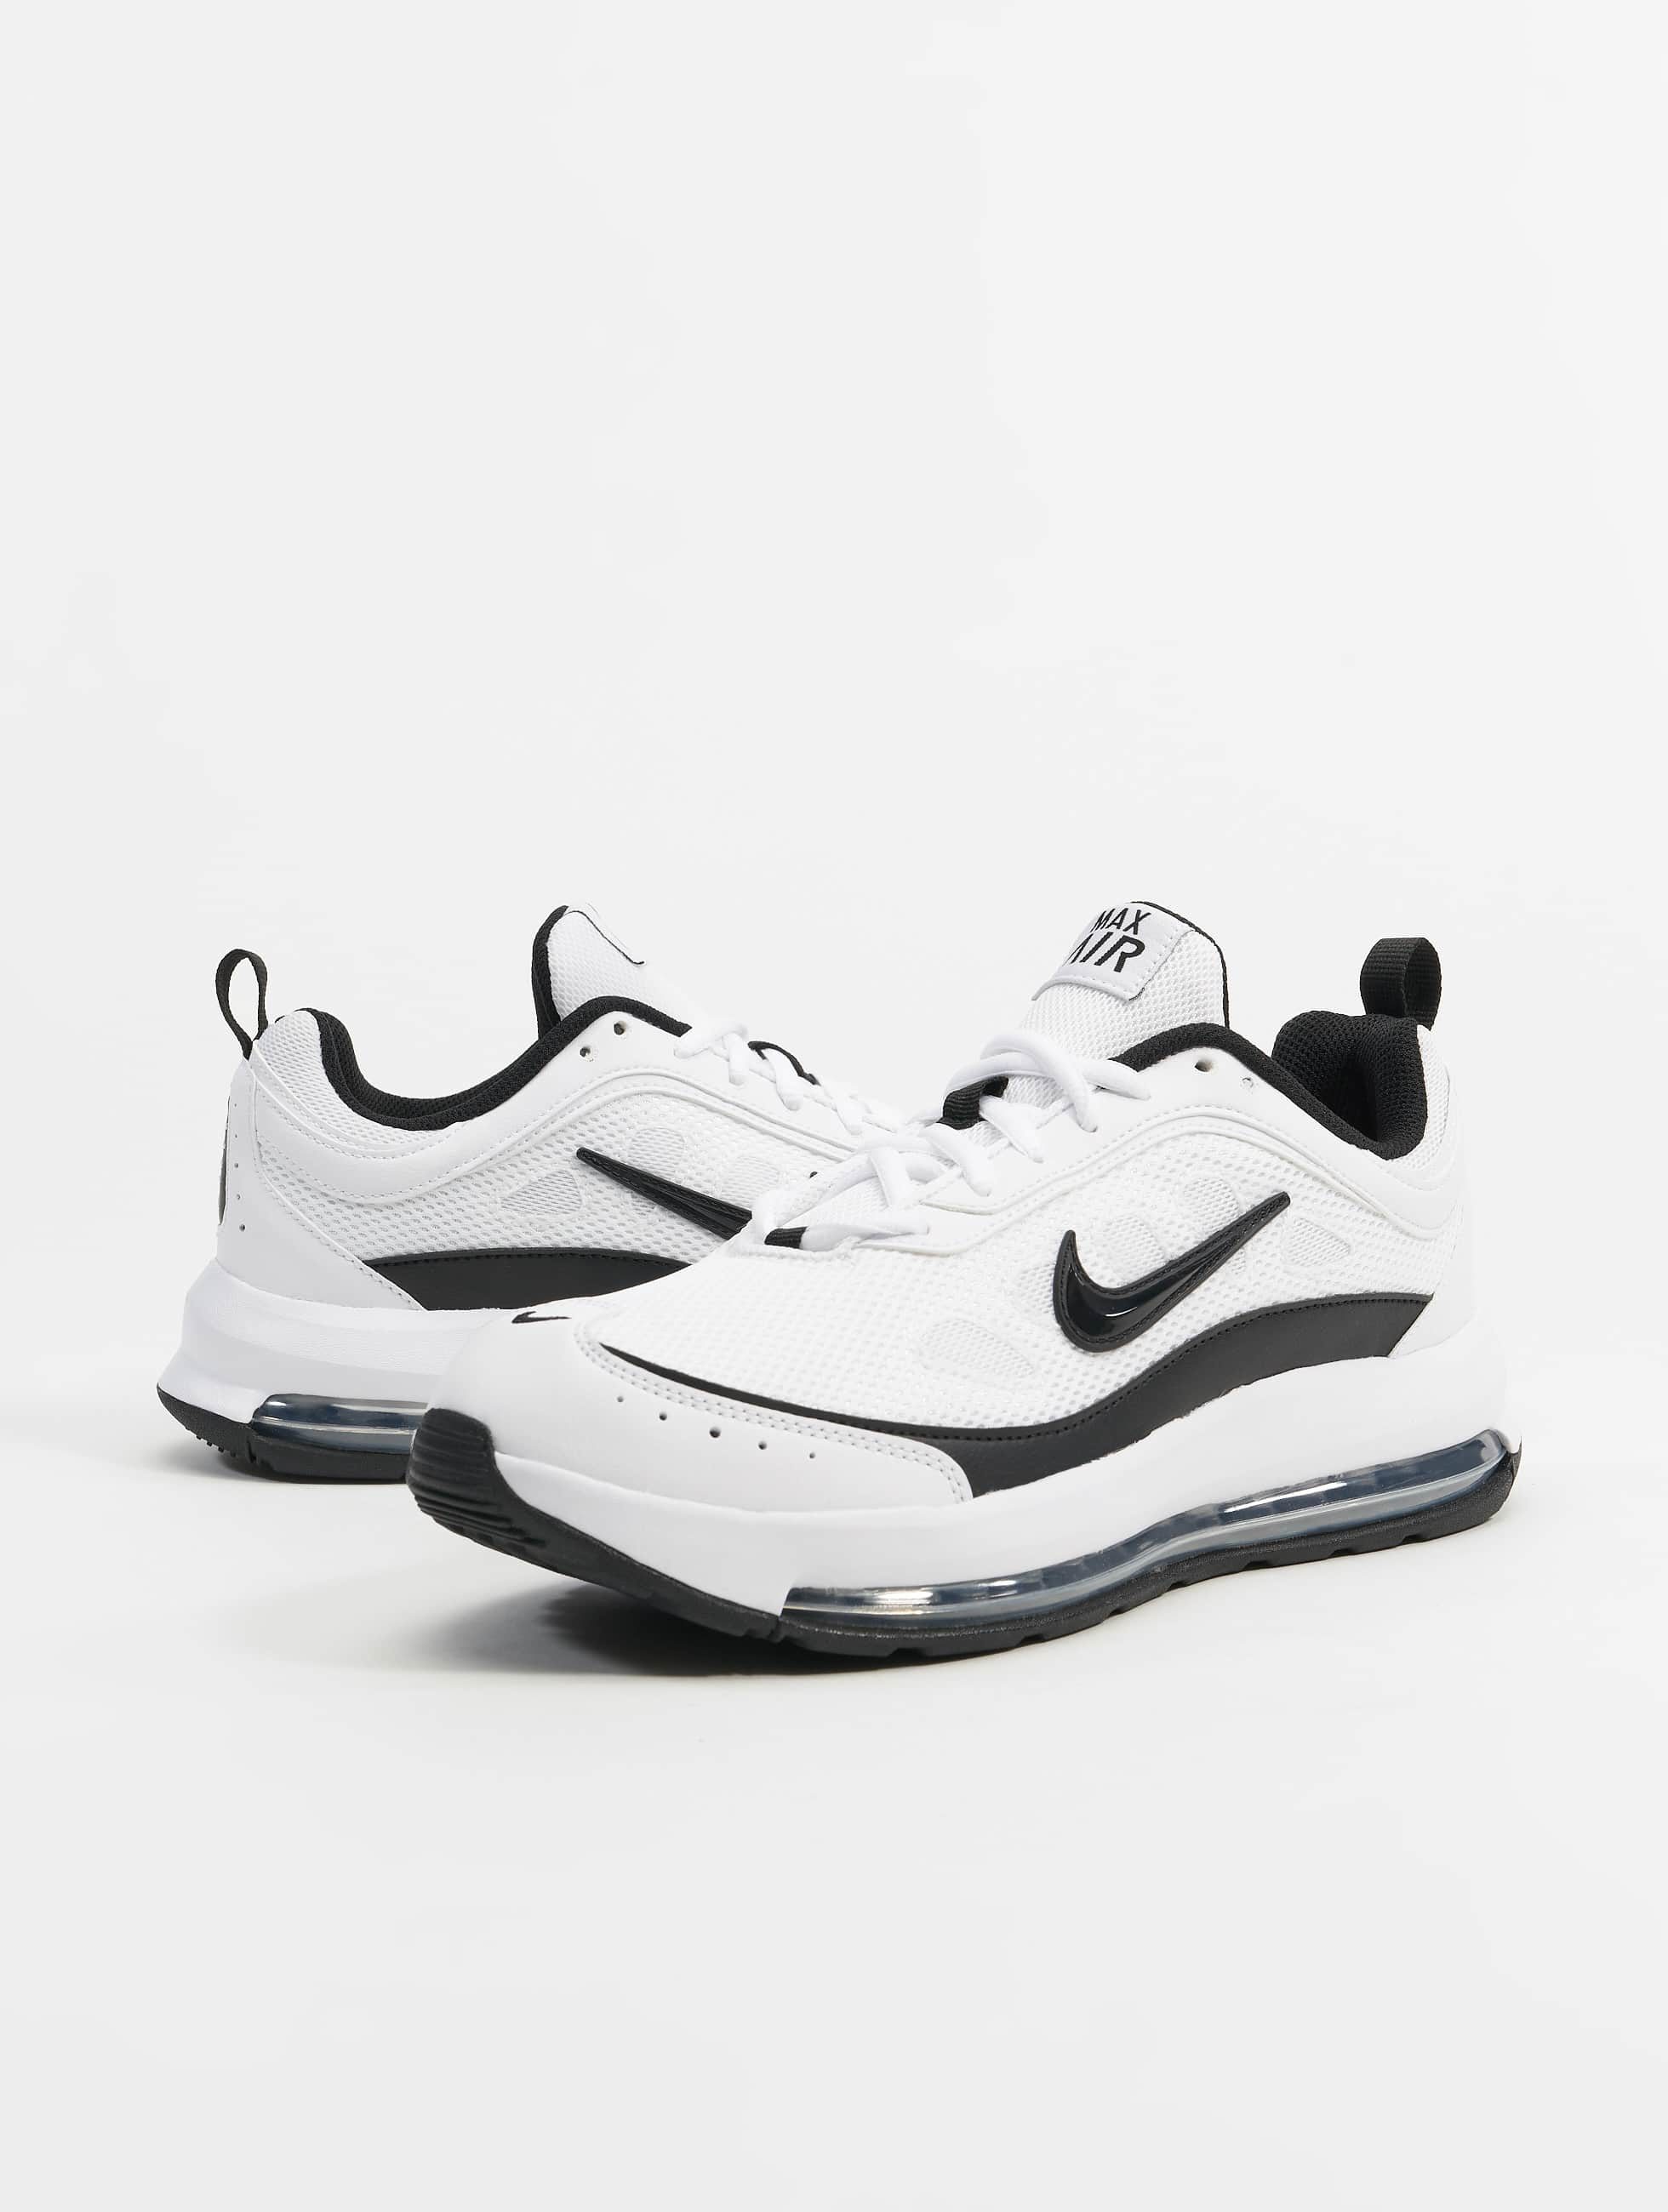 Identiteit Adelaide Grafiek Nike Shoe / Sneakers Air Max AP in white 979818